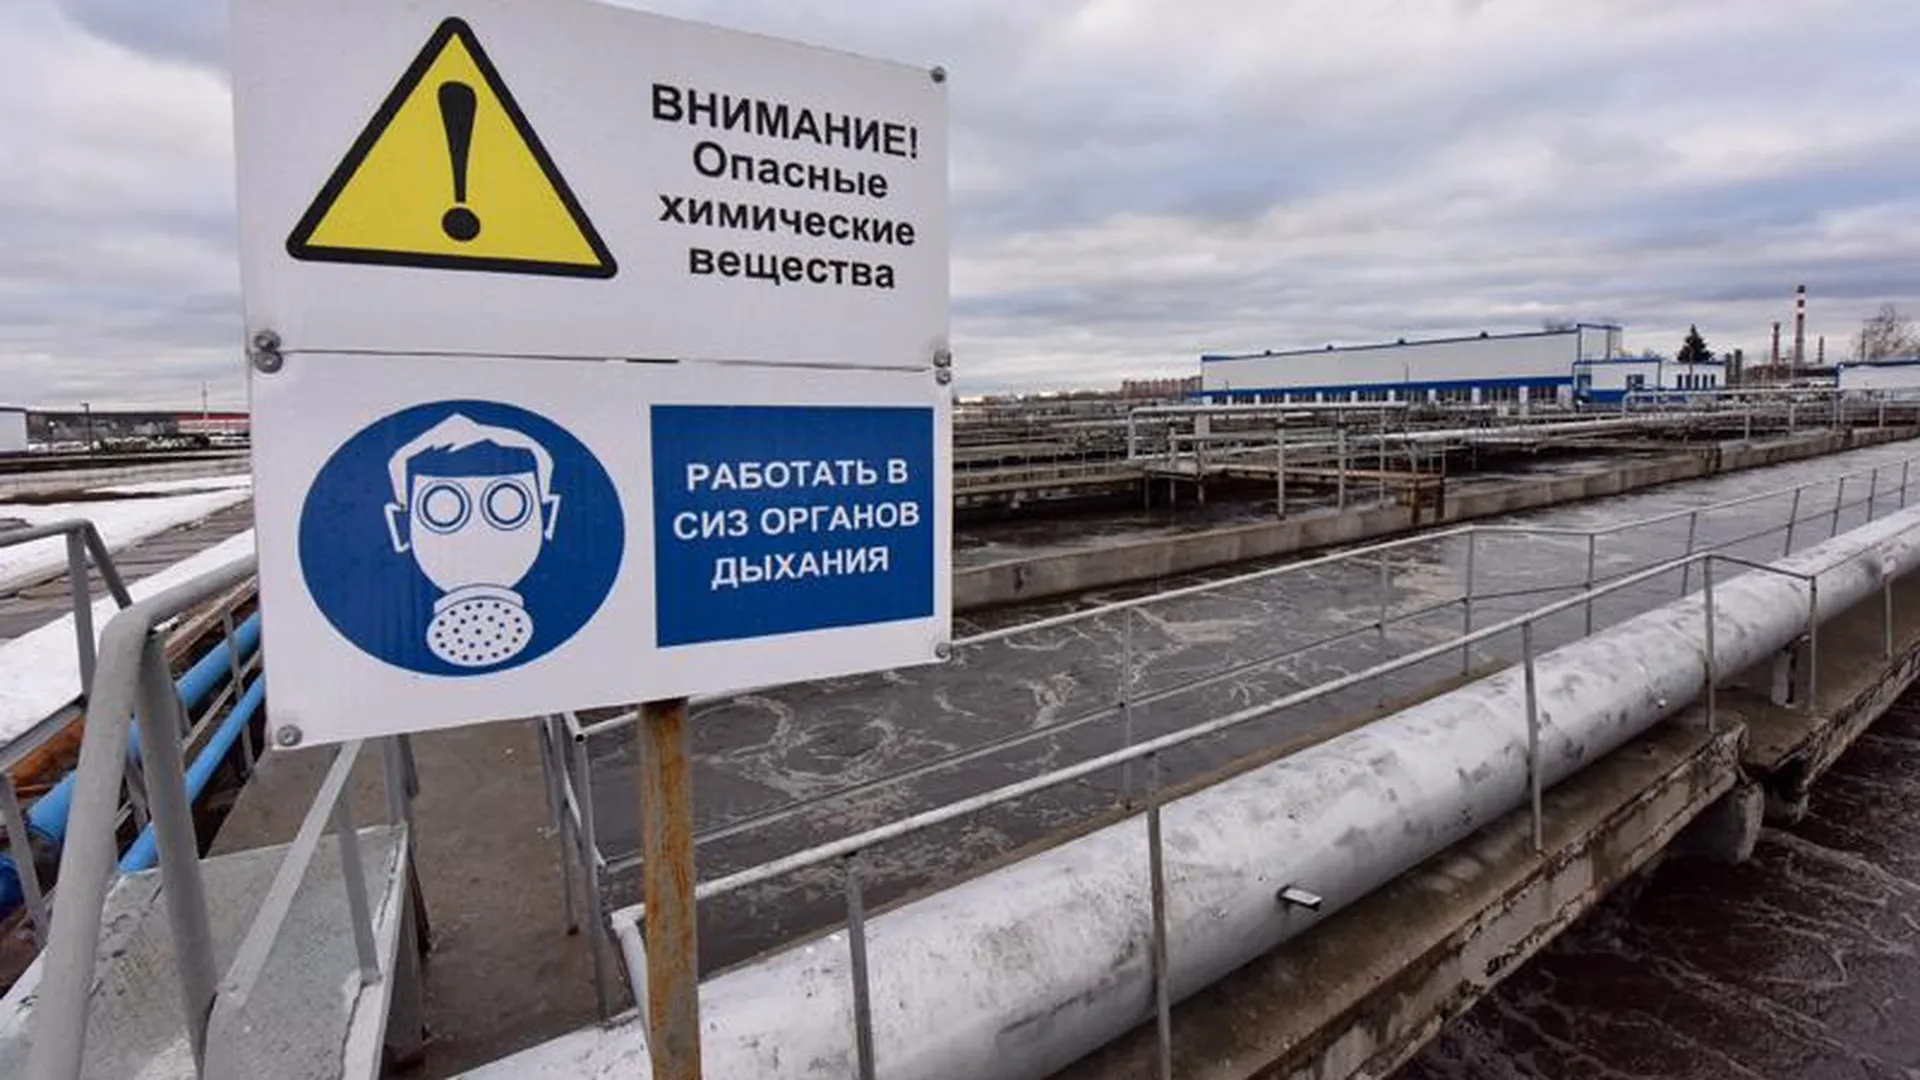 Губернатор осмотрел очистные сооружения в Щелковском районе